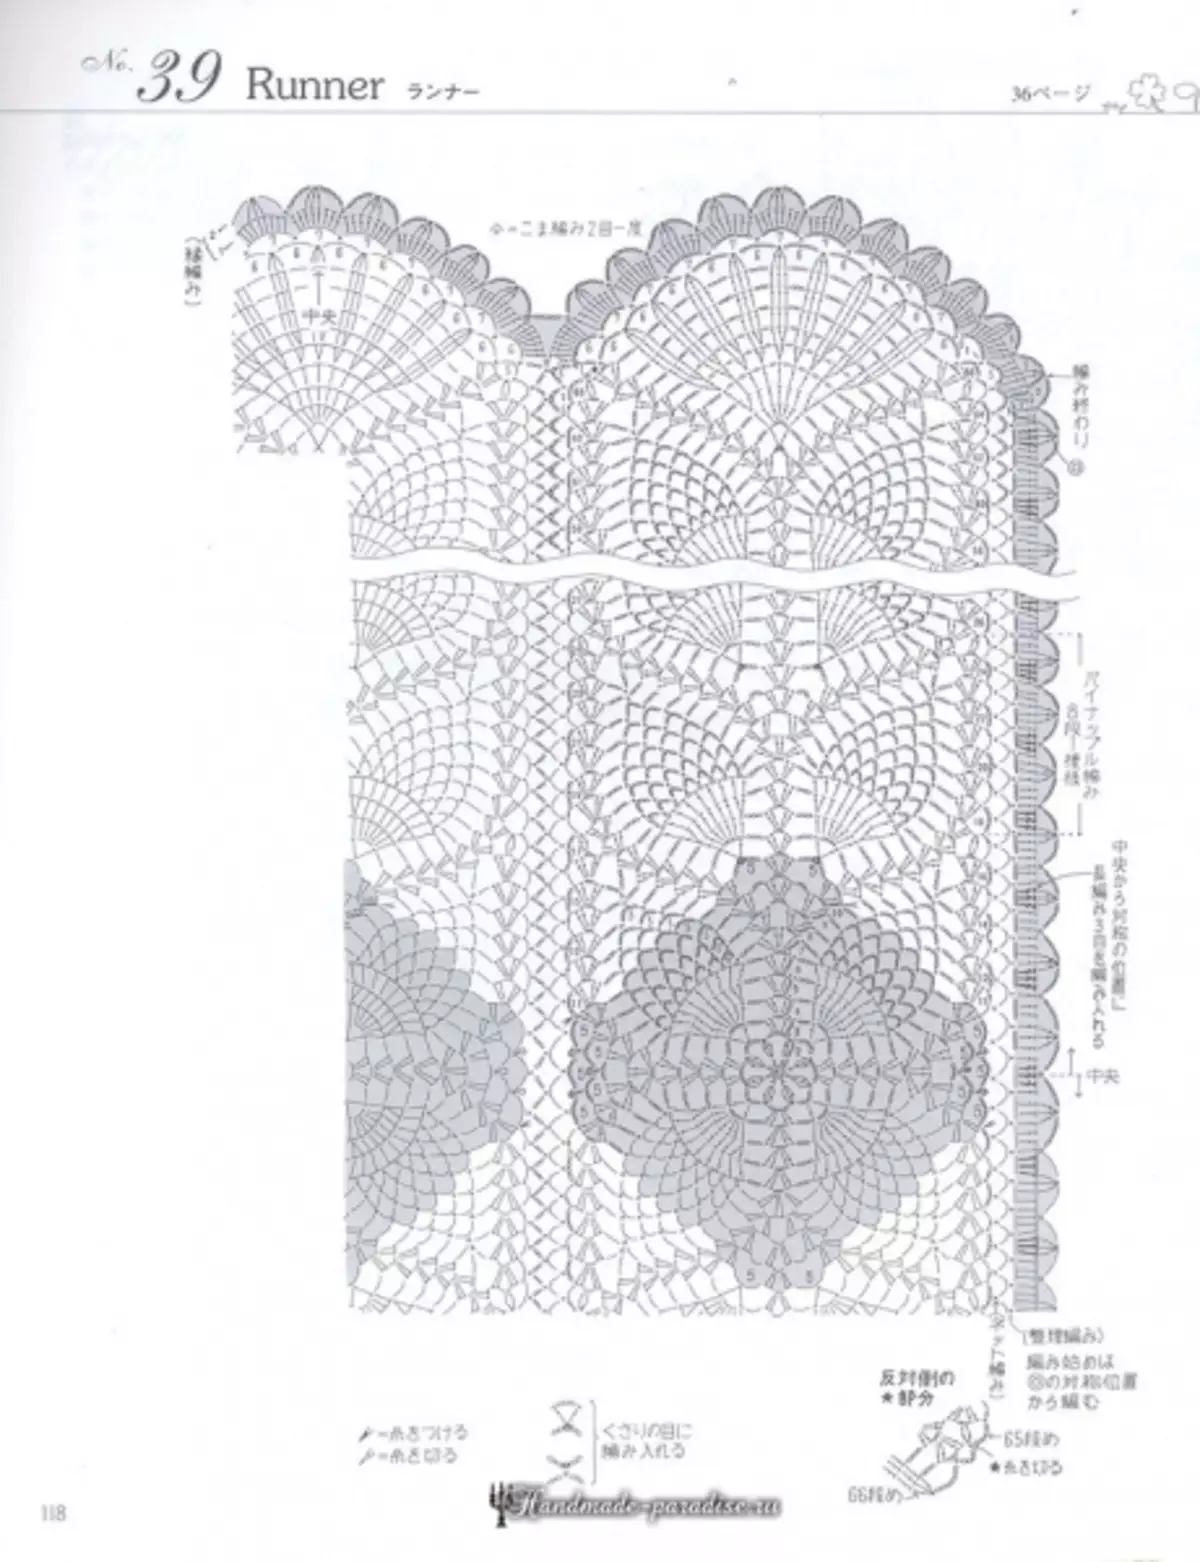 মার্জিত Crochet লেইস 2019 ম্যাগাজিন - Napkins এবং Crochet Tablecloths